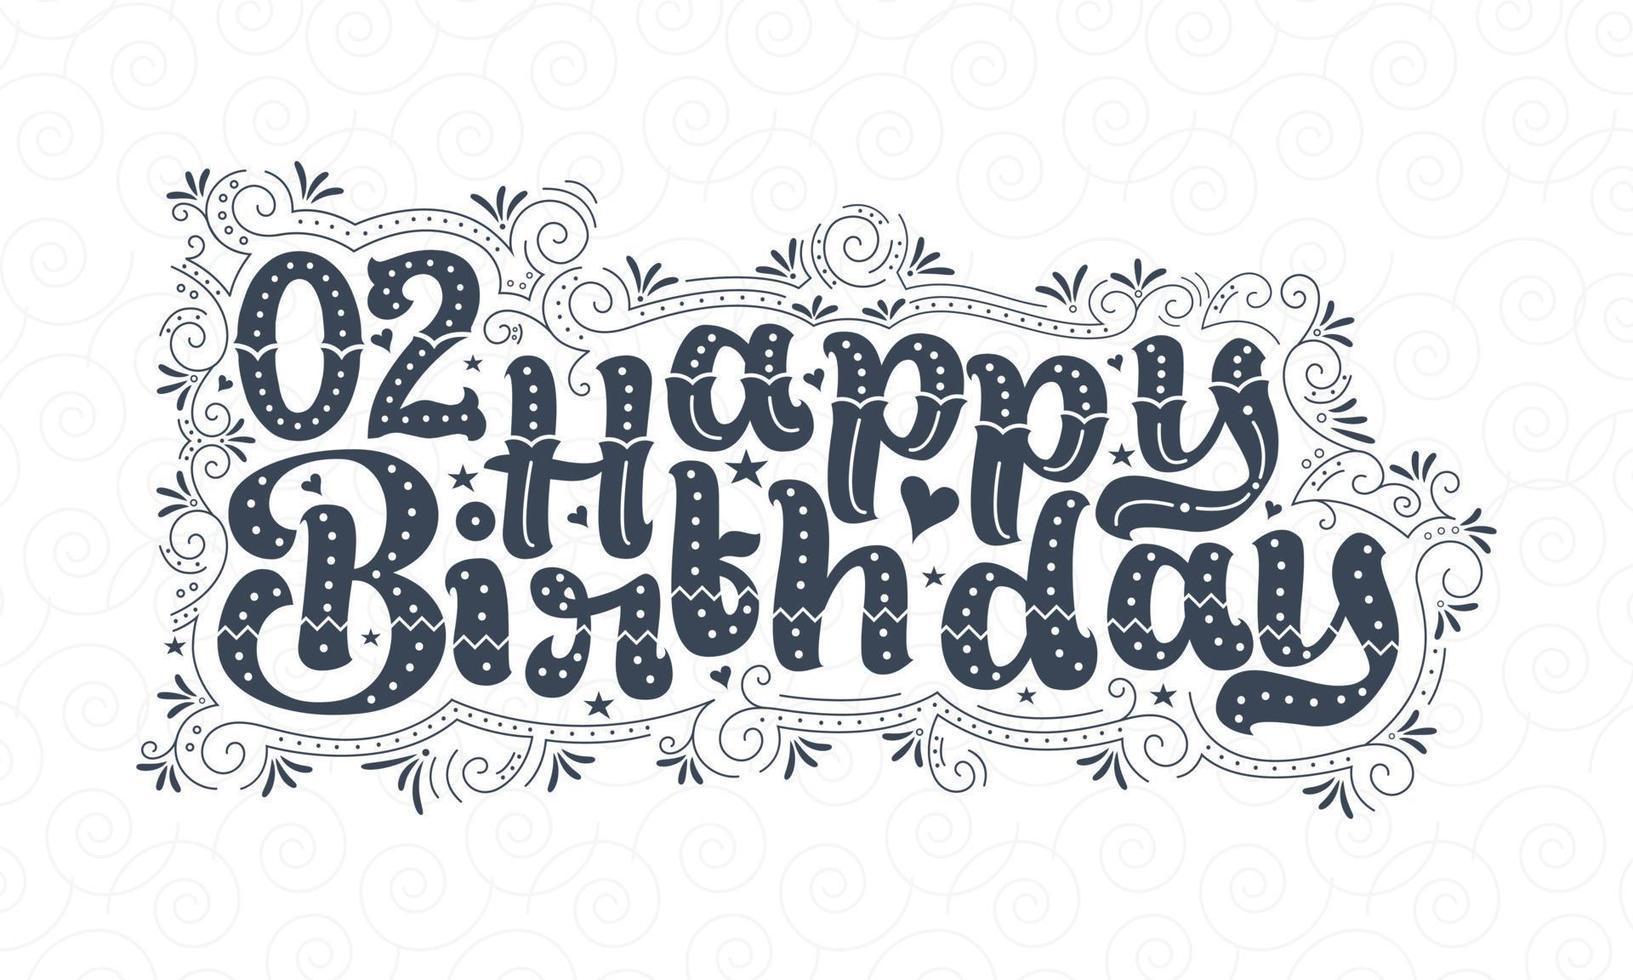 2a scritta di buon compleanno, bellissimo design tipografico di 2 anni di compleanno con punti, linee e foglie. vettore